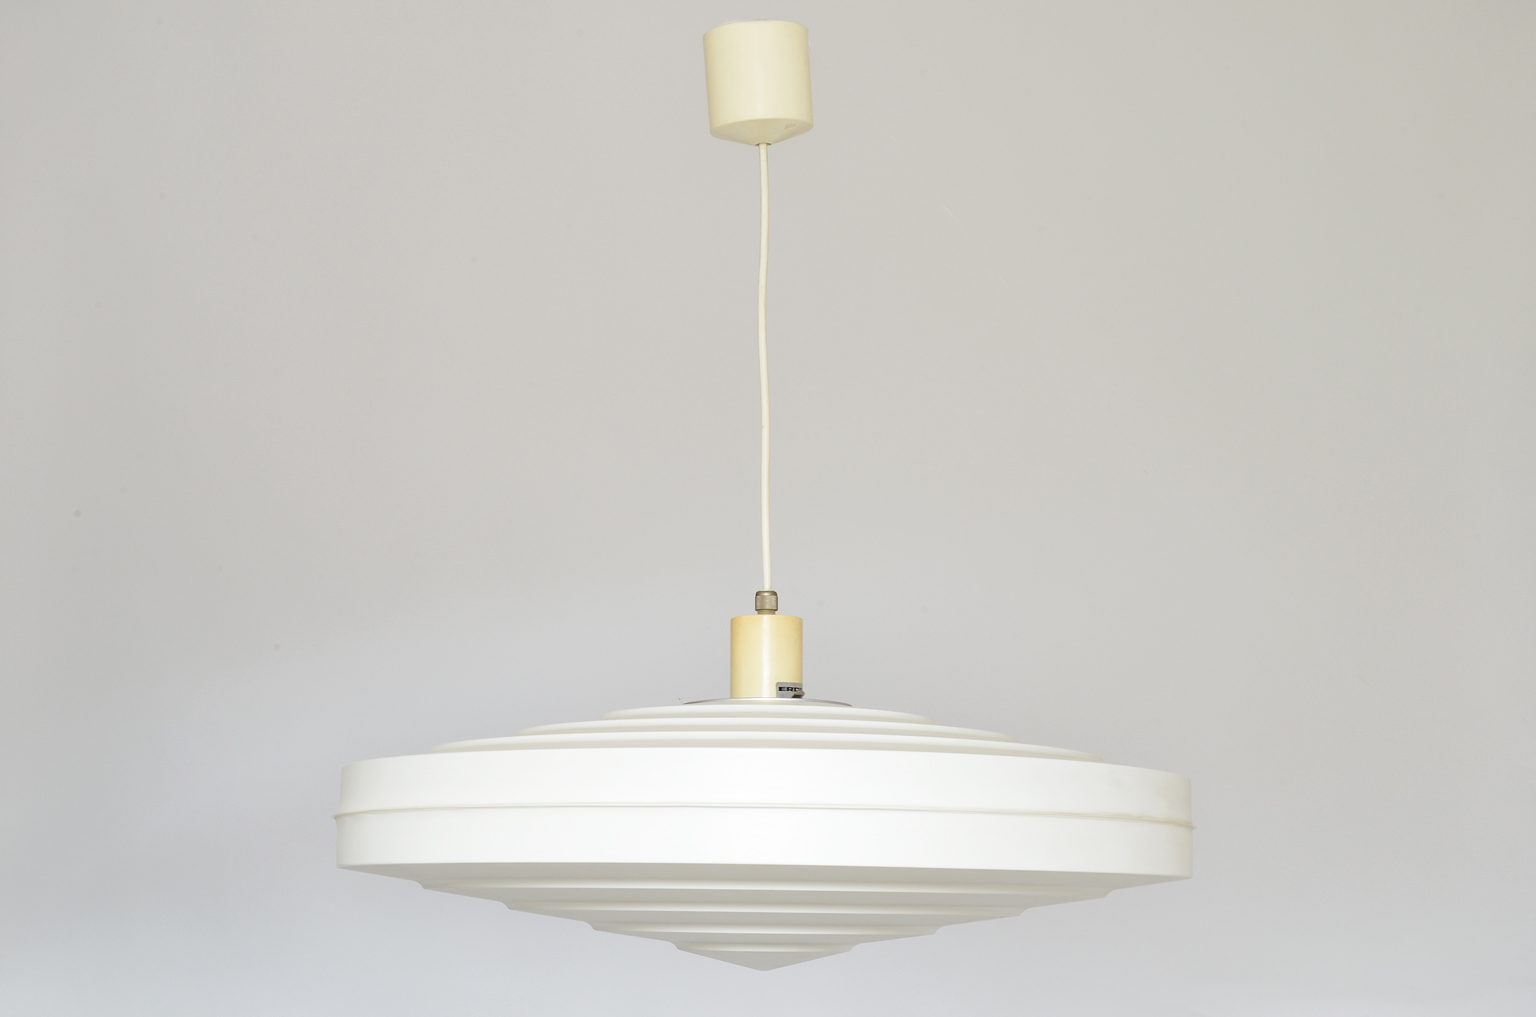 White Pendant Lamp by Aloys F. Gangkofner for Erco Leuchten, Germany 1962